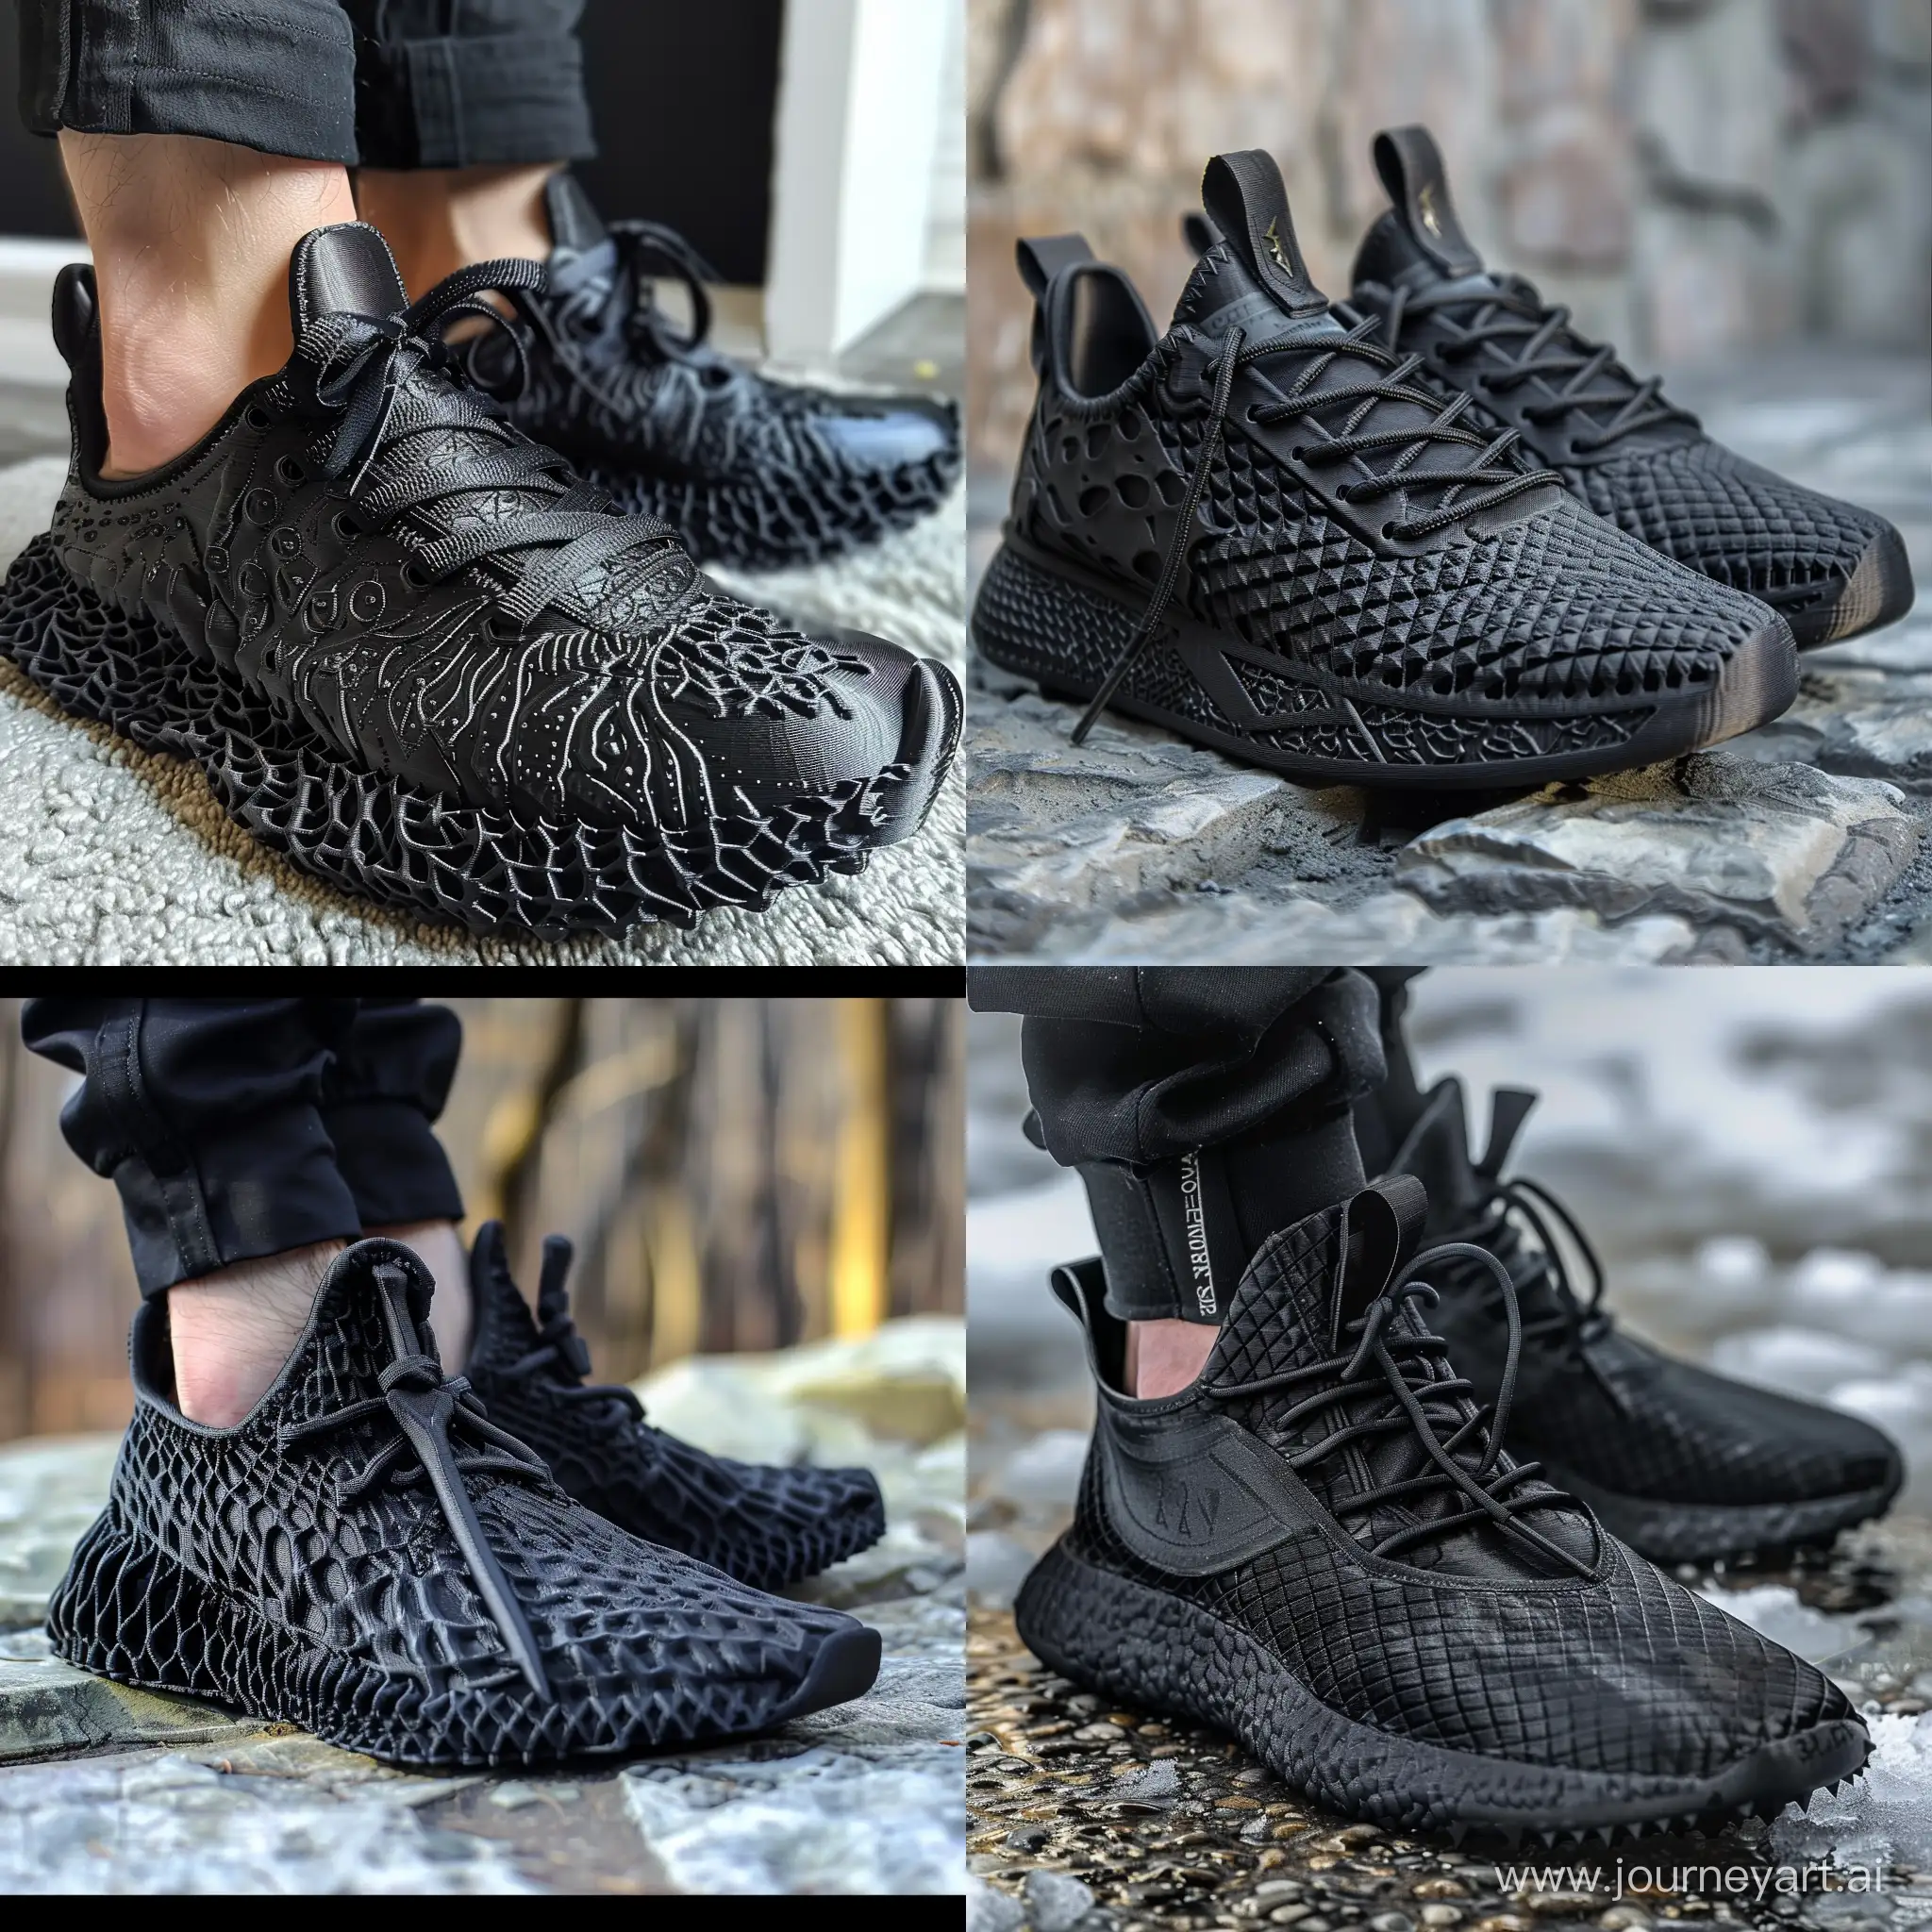 Trendy-Black-3D-Printed-Sneakers-Inspired-by-Jon-Snows-Sword